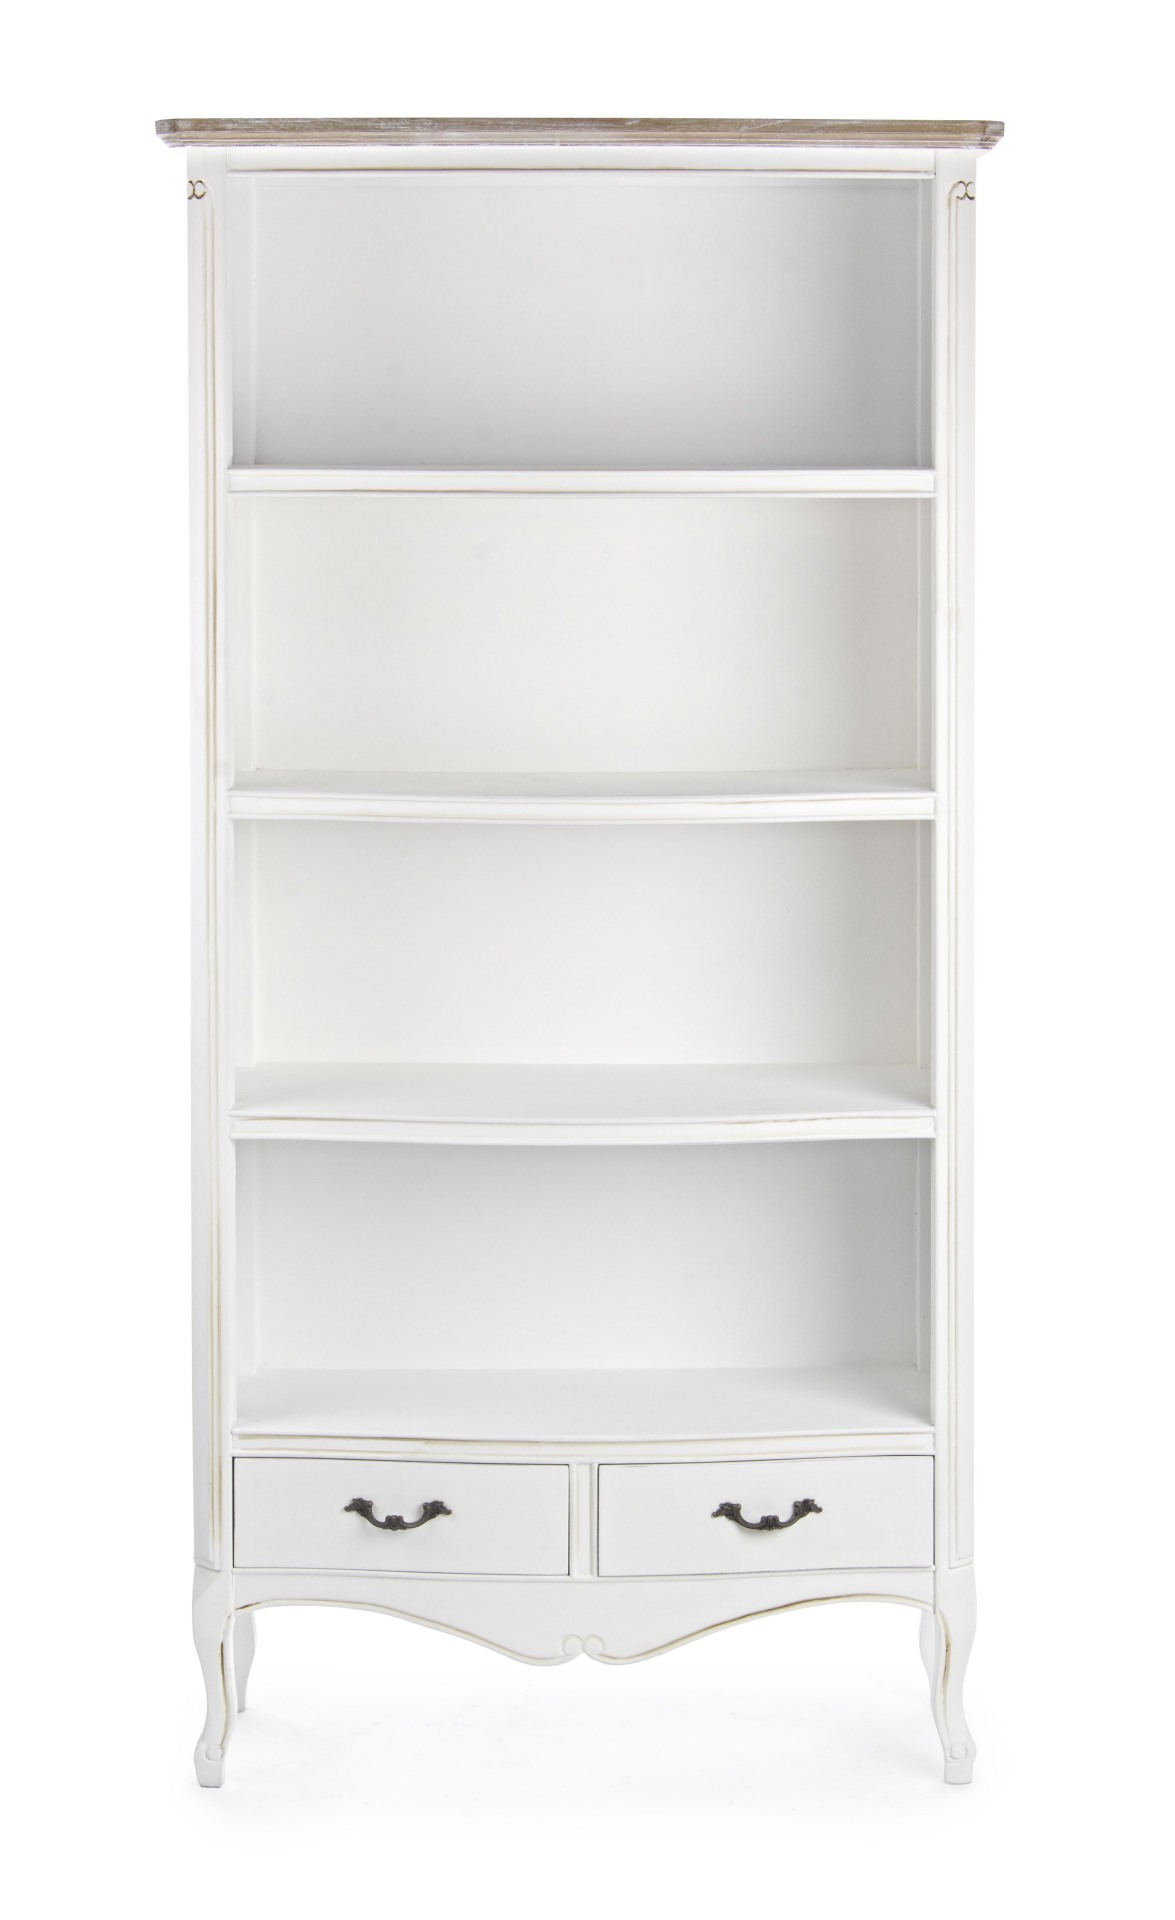 Das Bücherregal Justine überzeugt mit seinem klassischen Design. Gefertigt wurde es aus Paulowniaholz, welches einen weißen Farbton besitzt. Das Gestell ist auch aus Paulowniaholz. Das Bücherregal verfügt über vier Fächer und zwei Schubladen. Die Breite b